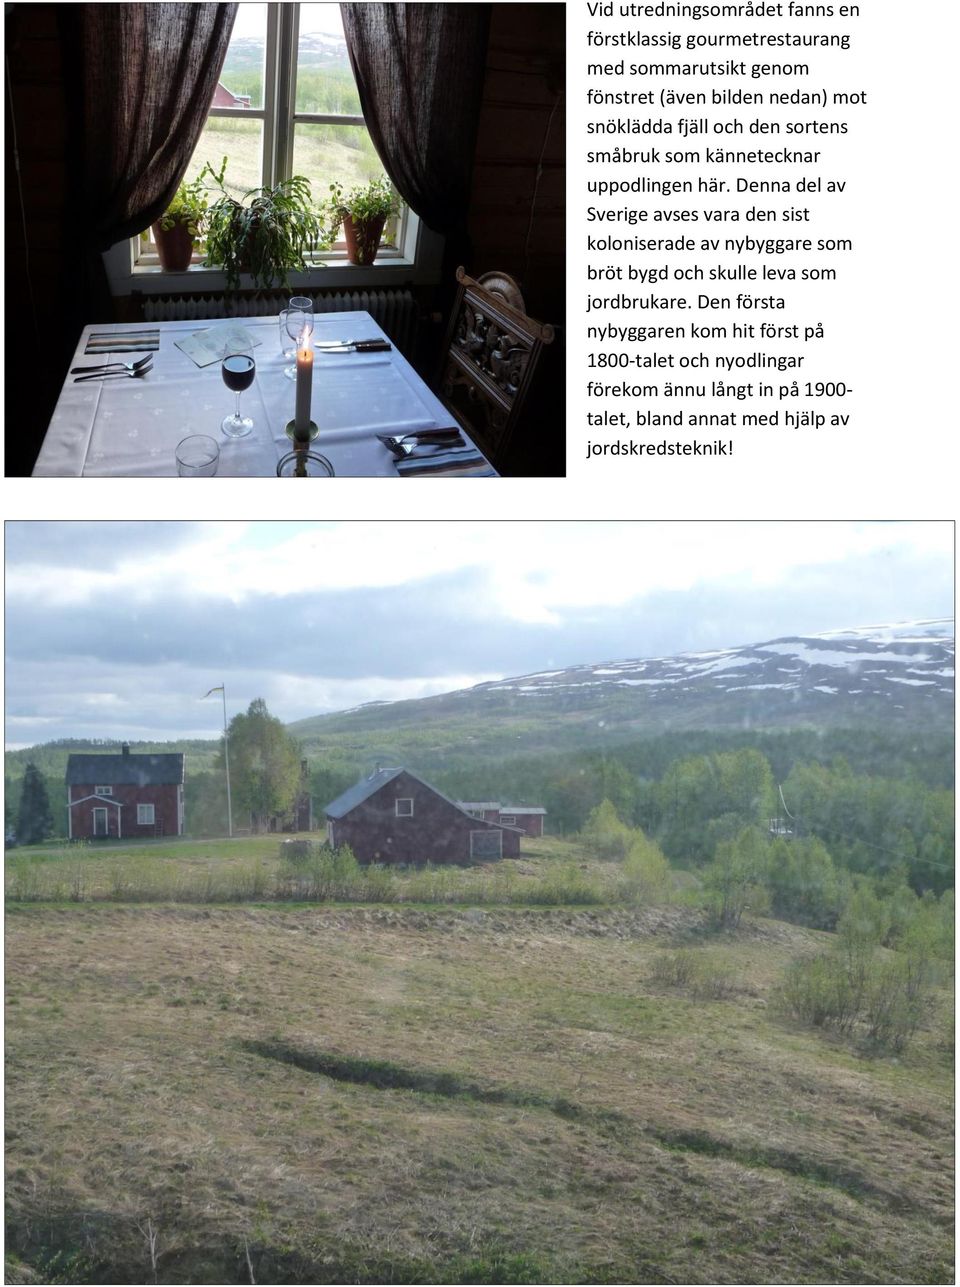 Denna del av Sverige avses vara den sist koloniserade av nybyggare som bröt bygd och skulle leva som jordbrukare.